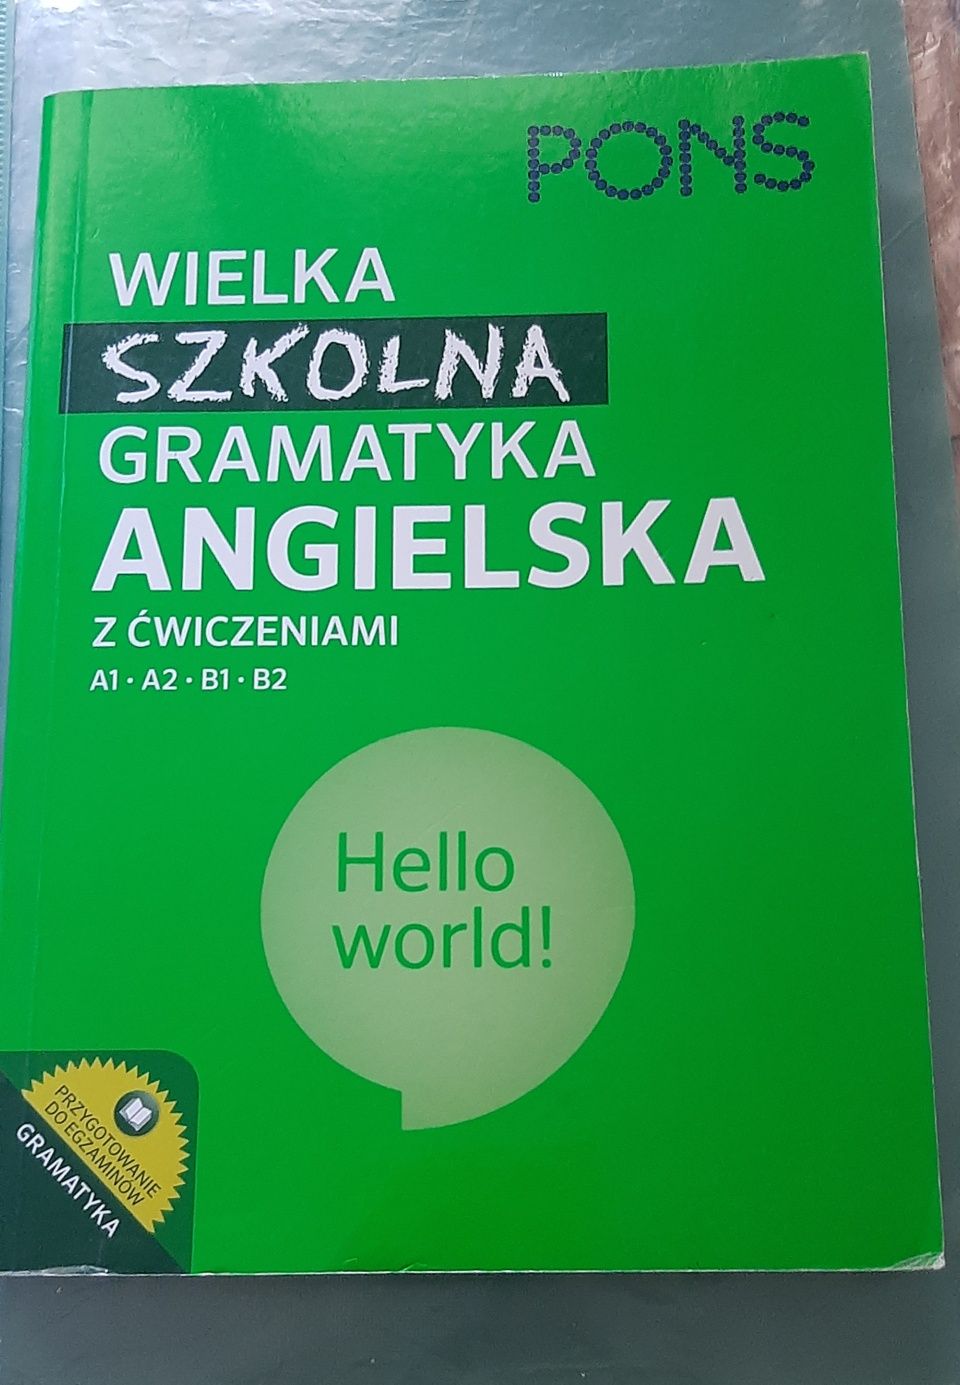 Książka do angielskiego